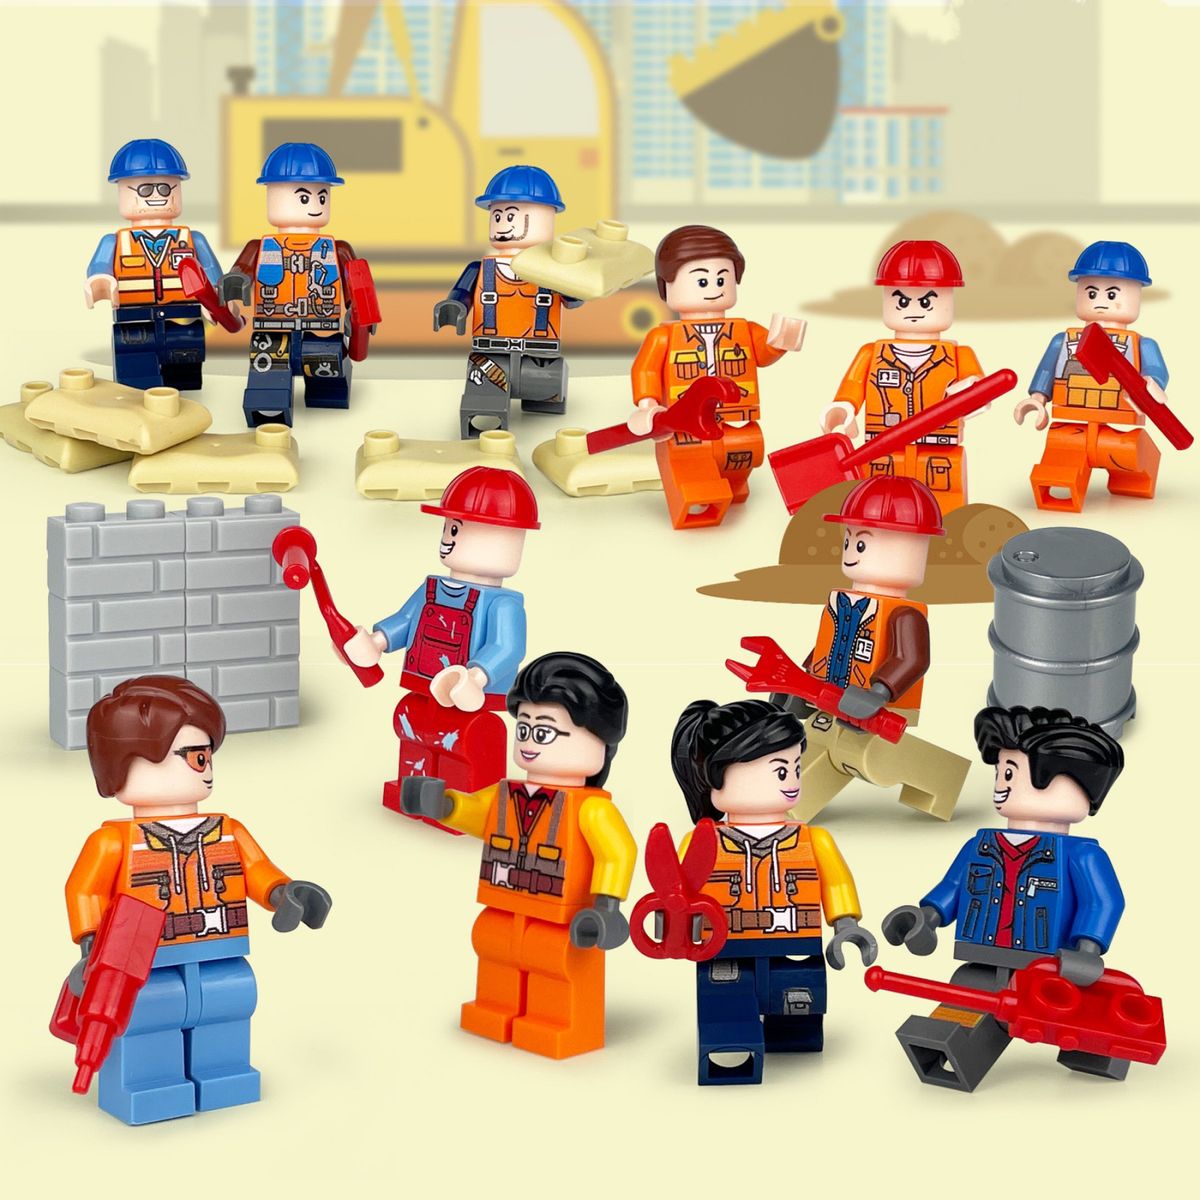 レゴ互換 土工作業員 建築現場 ミニフィグ 人形フィギュア 12体セット LEGO互換